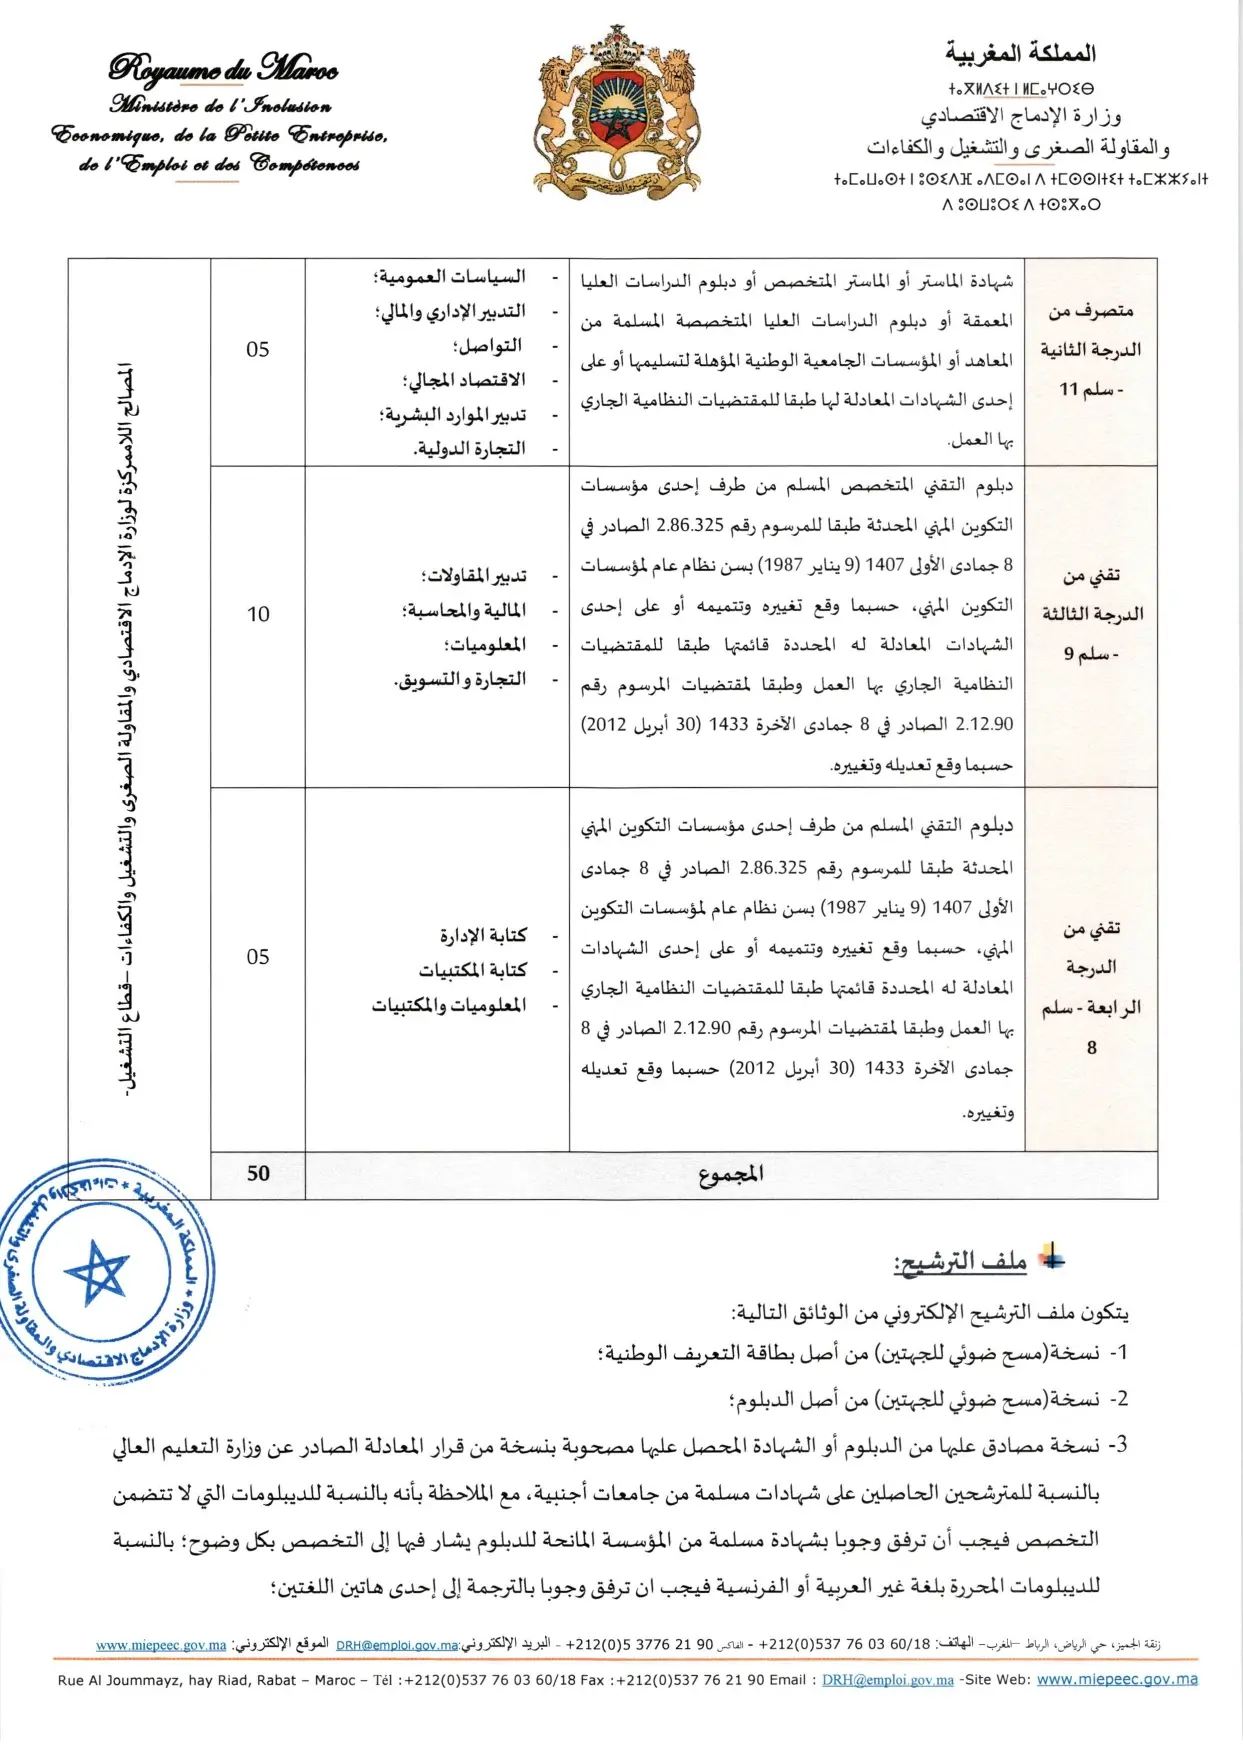 Concours Ministère de l'Inclusion Économique 2024 (50 postes)